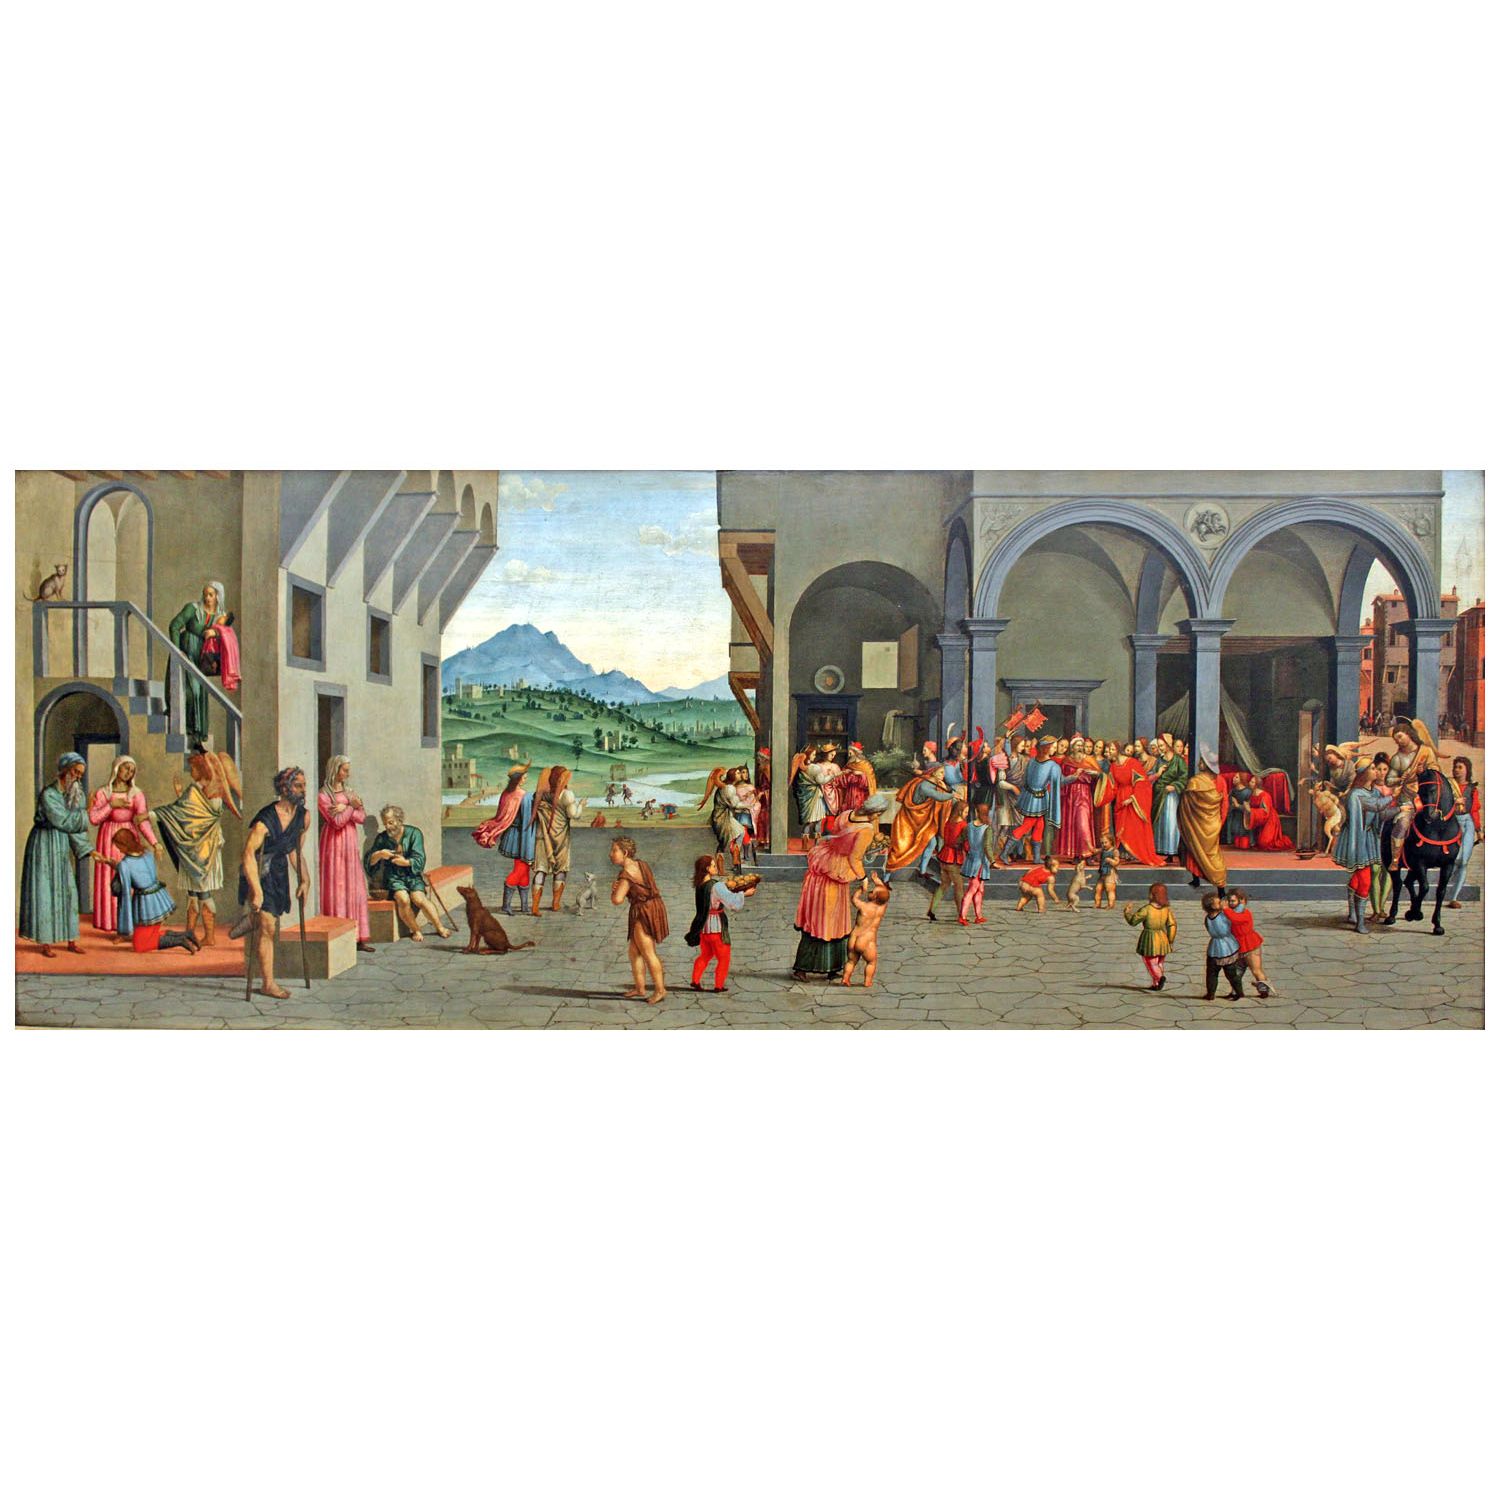 Giuliano Bugiardini. Storie del giovane Tobia. 1535. Gemaldegalerie Berlin